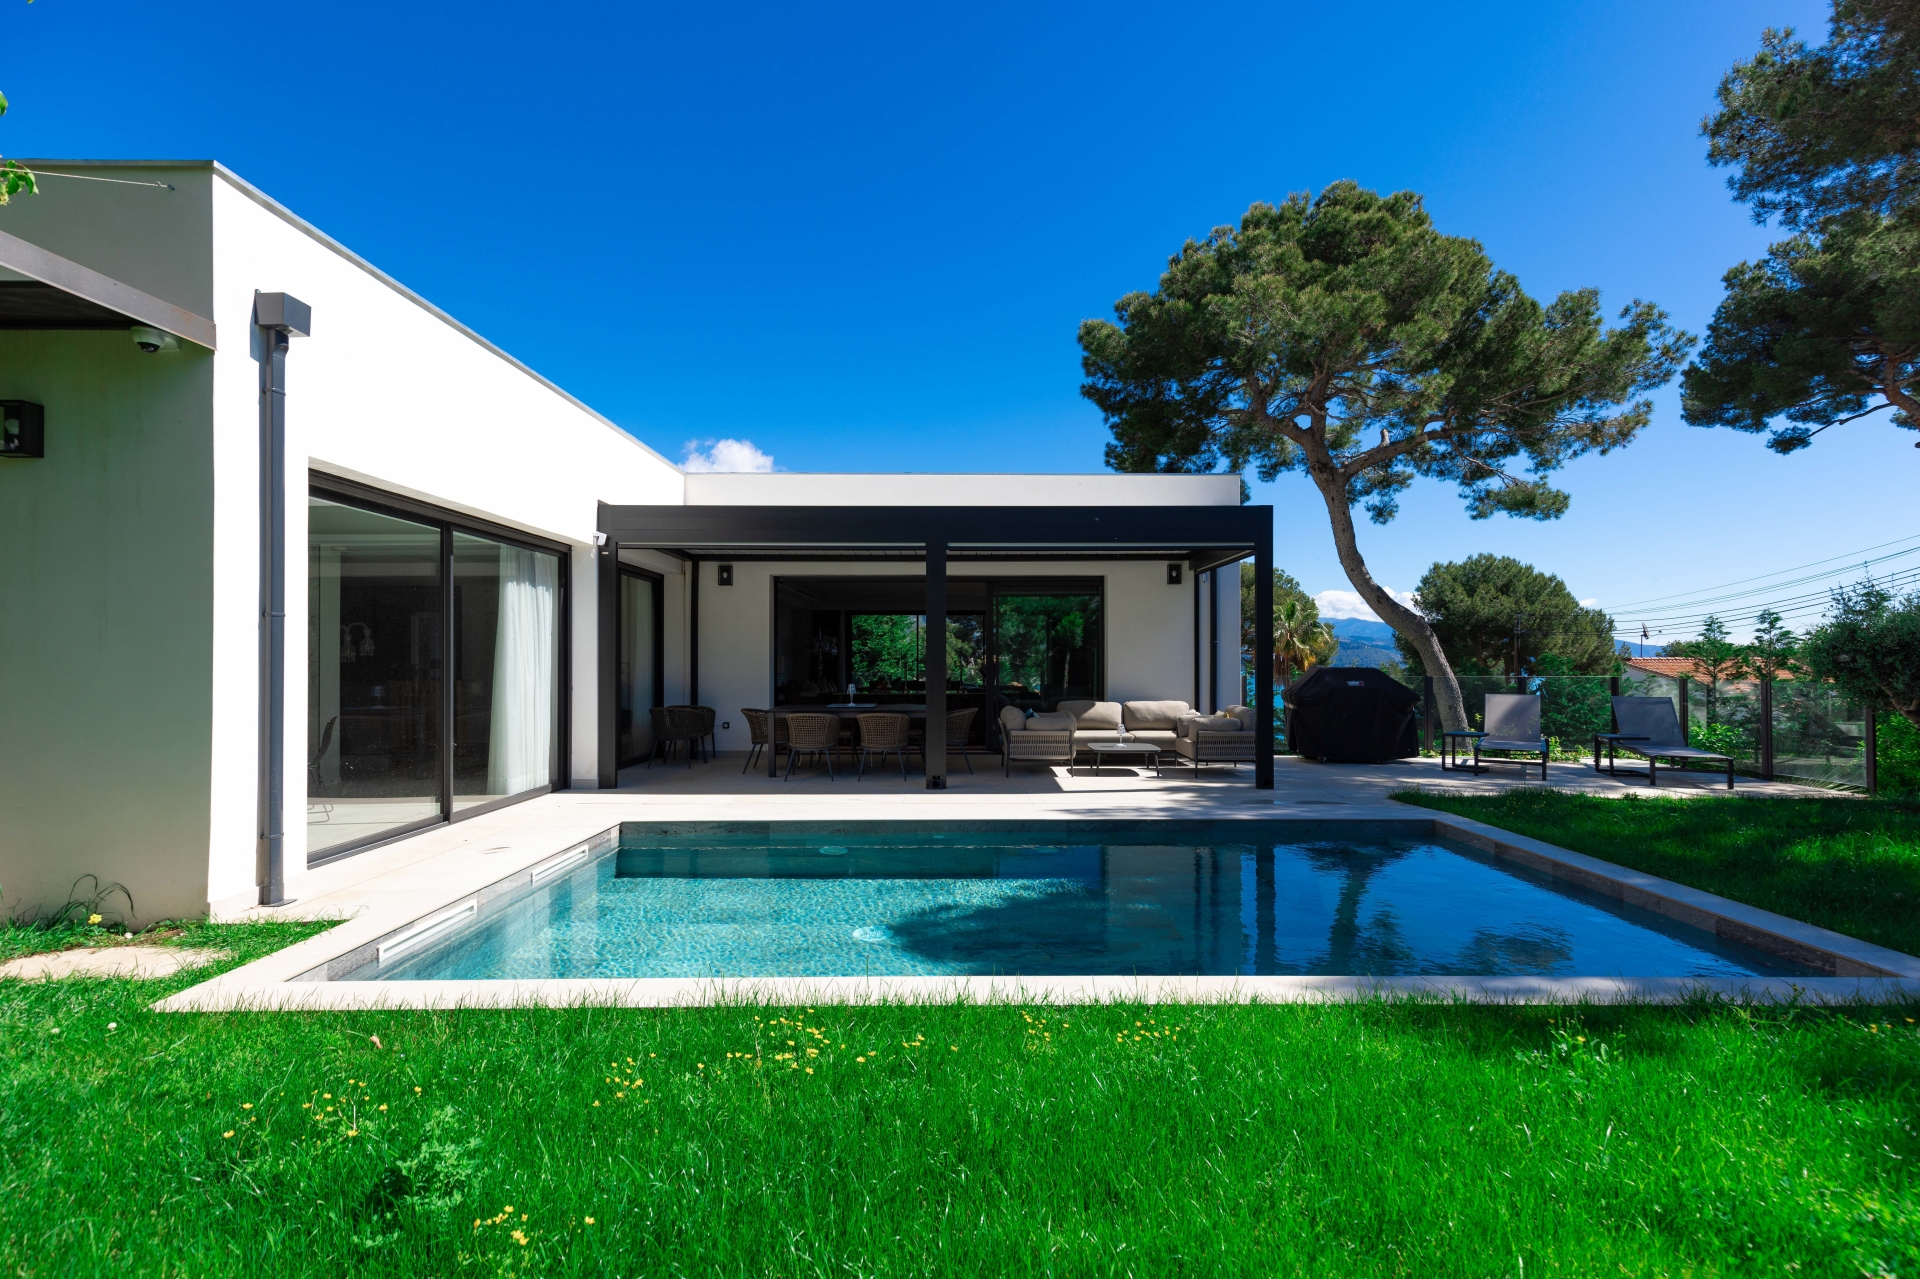 Dotta Villa a vendre - VILLA STECYA - Roquebrune-Cap-Martin - Roquebrune-Cap-Martin - img074a4996